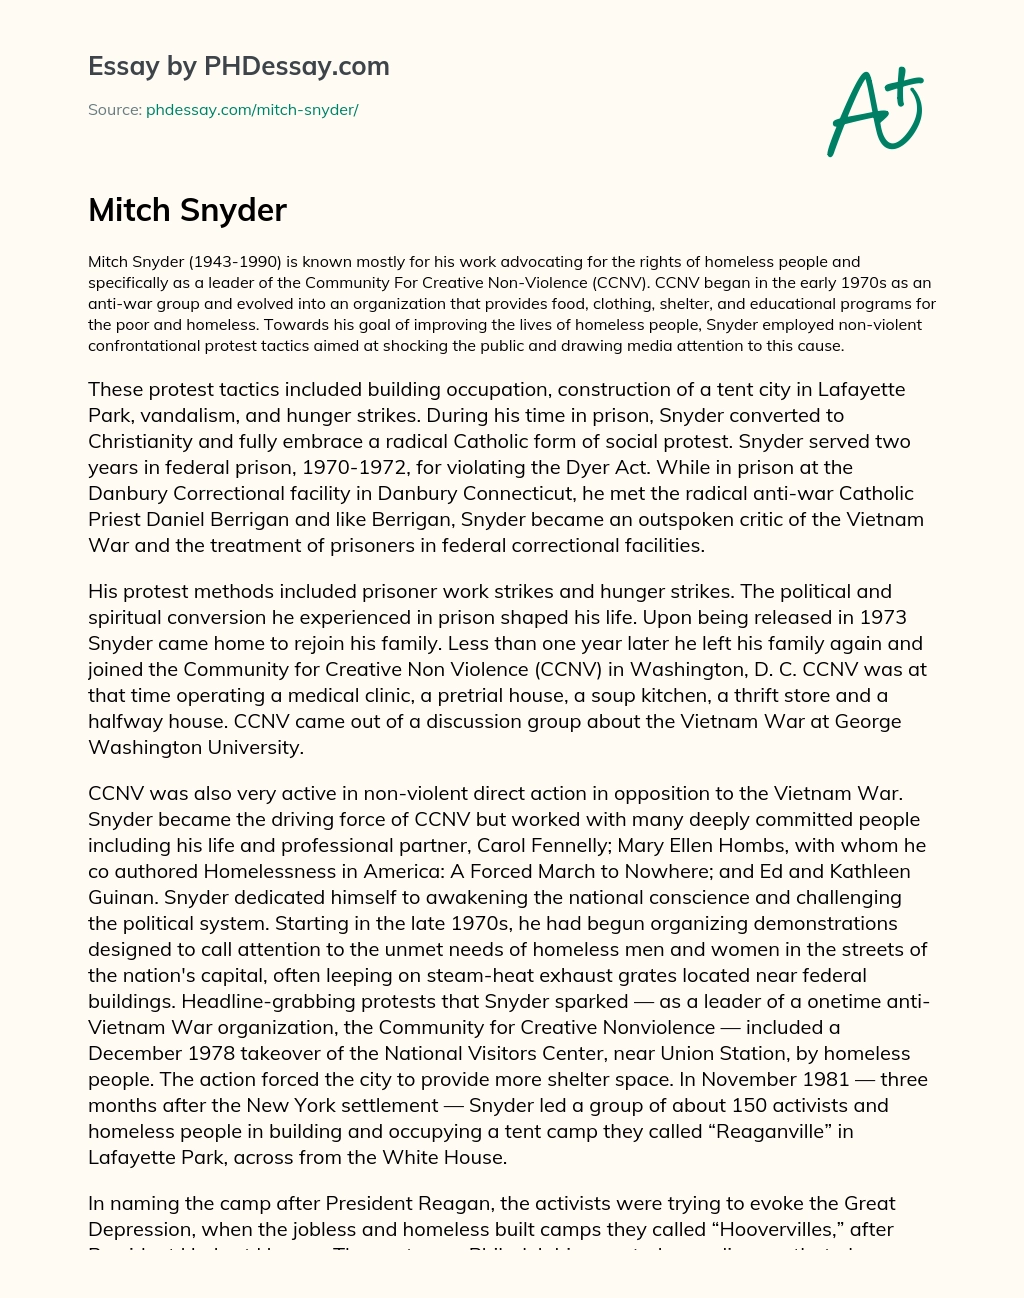 Mitch Snyder essay